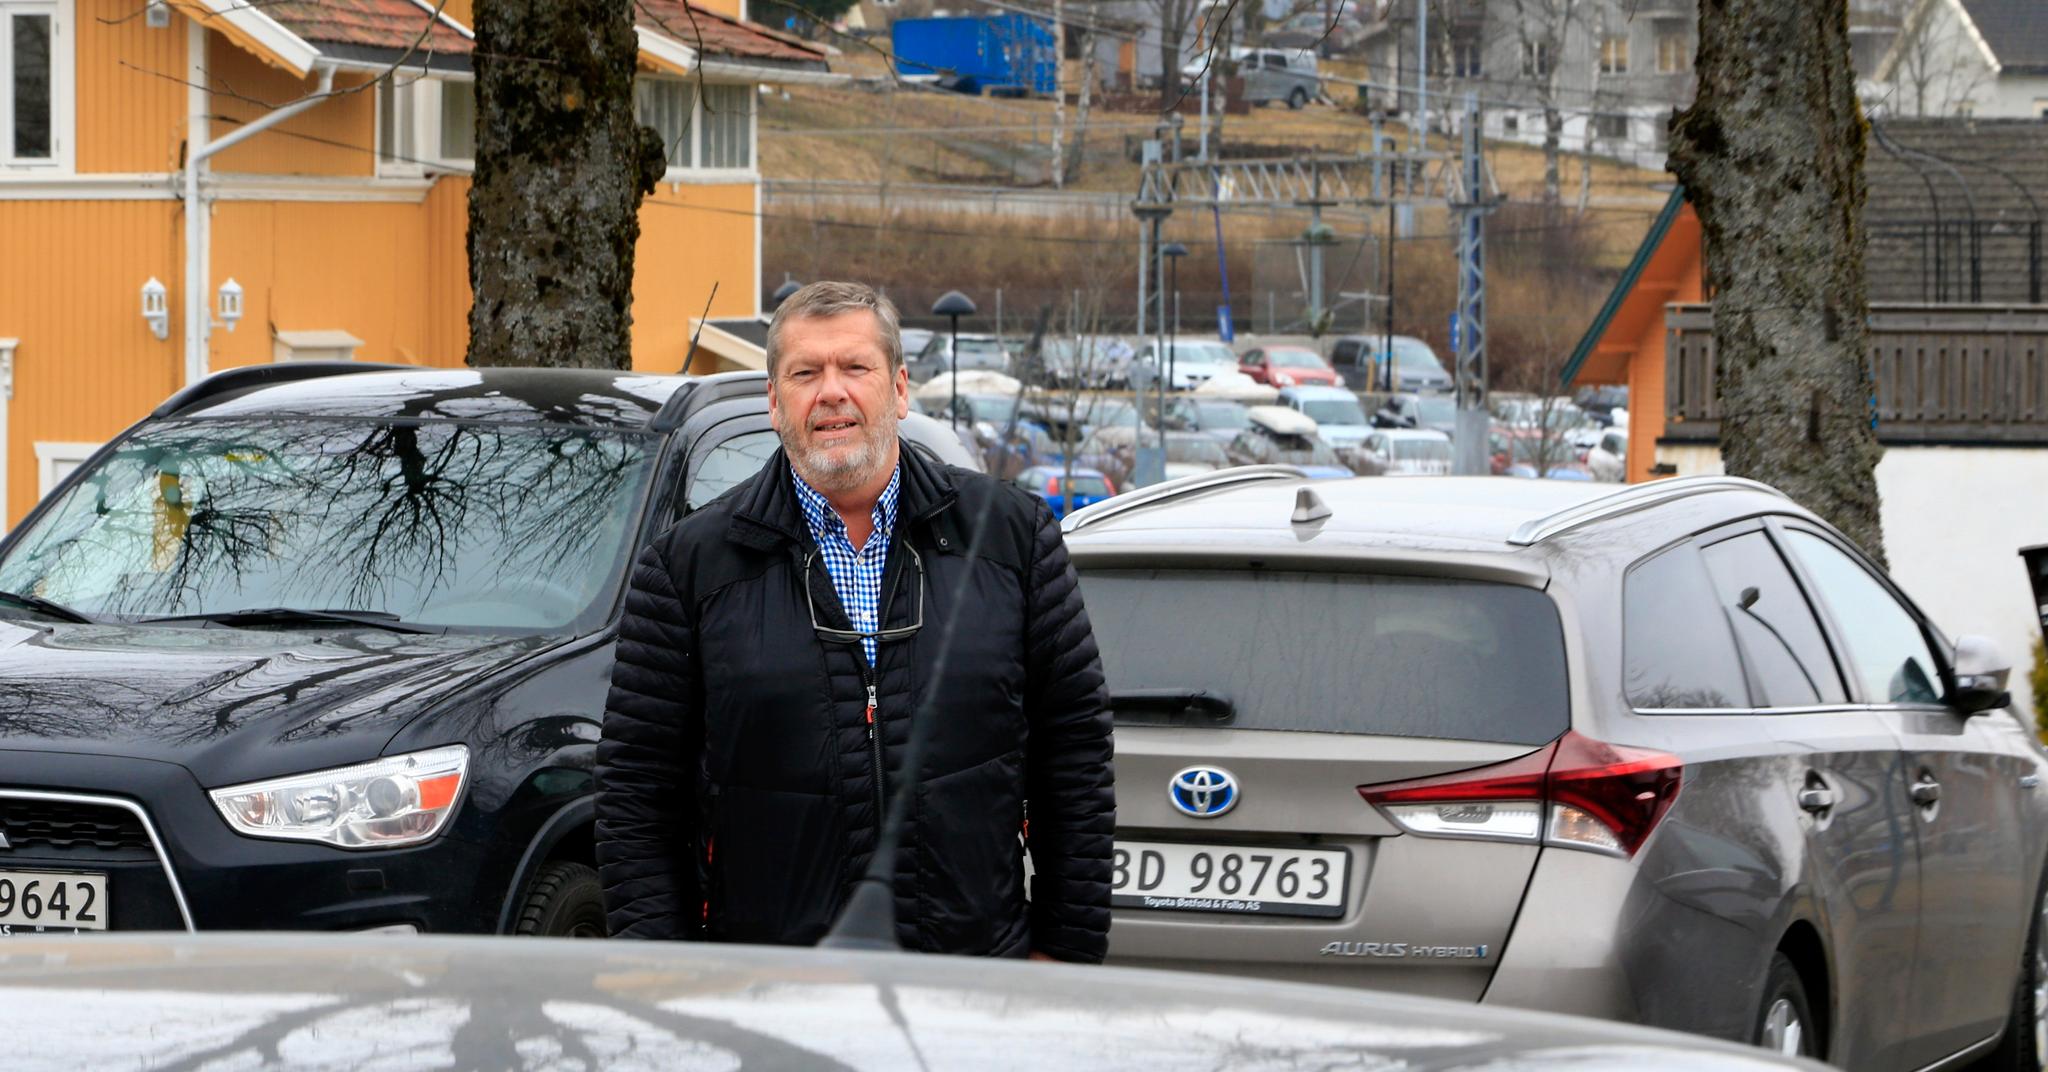 – Vi bygger mange boliger i sentrum, som gir mindre behov for parkering. Men allerede i dag sliter jeg med å finne parkeringsplass. Vi klarer ikke å lage et samfunn her uten biler, sier ordfører Tom Arne Ludvigsen (Ap) i Follo-kommunen Vestby.